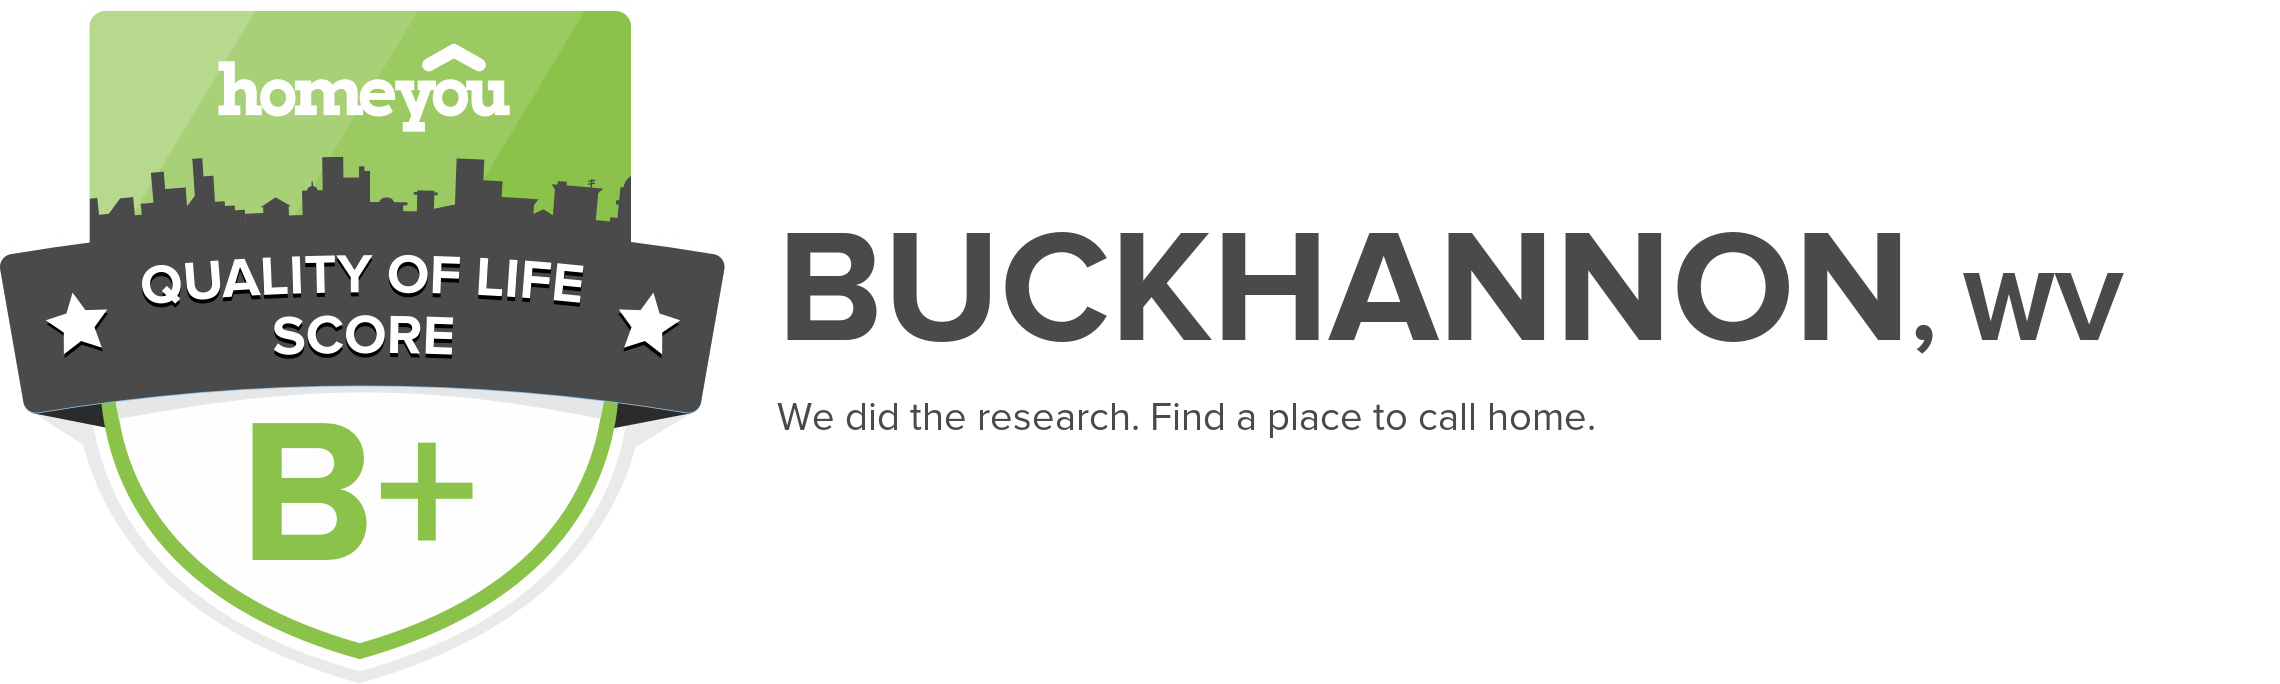 Buckhannon, WV